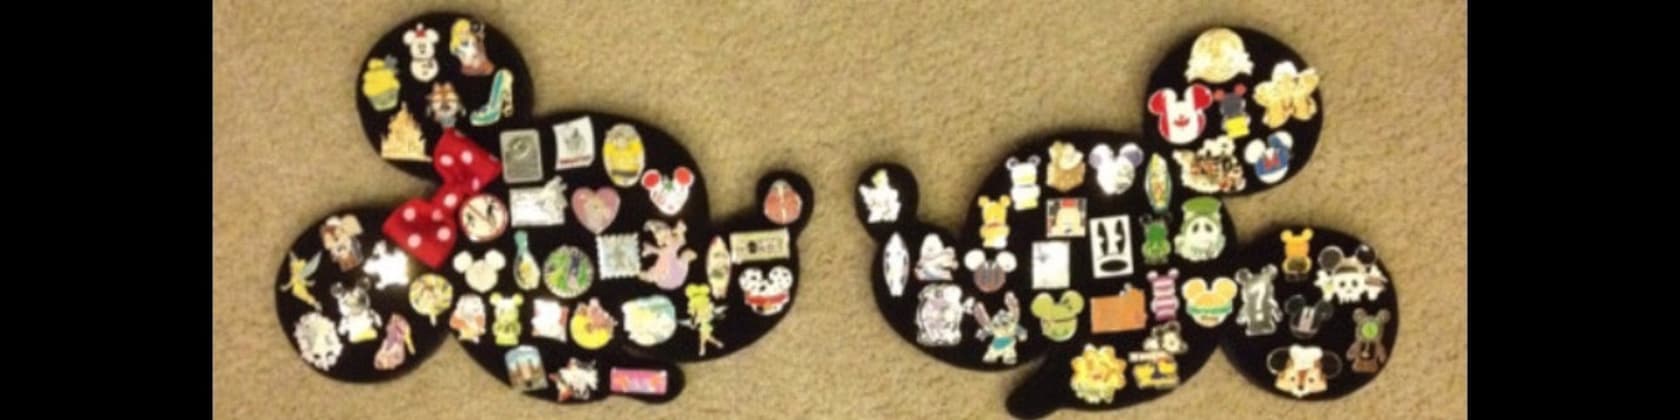 Disney Mickey Mouse Pin Display Board. Disney Pin Board 19 Tall